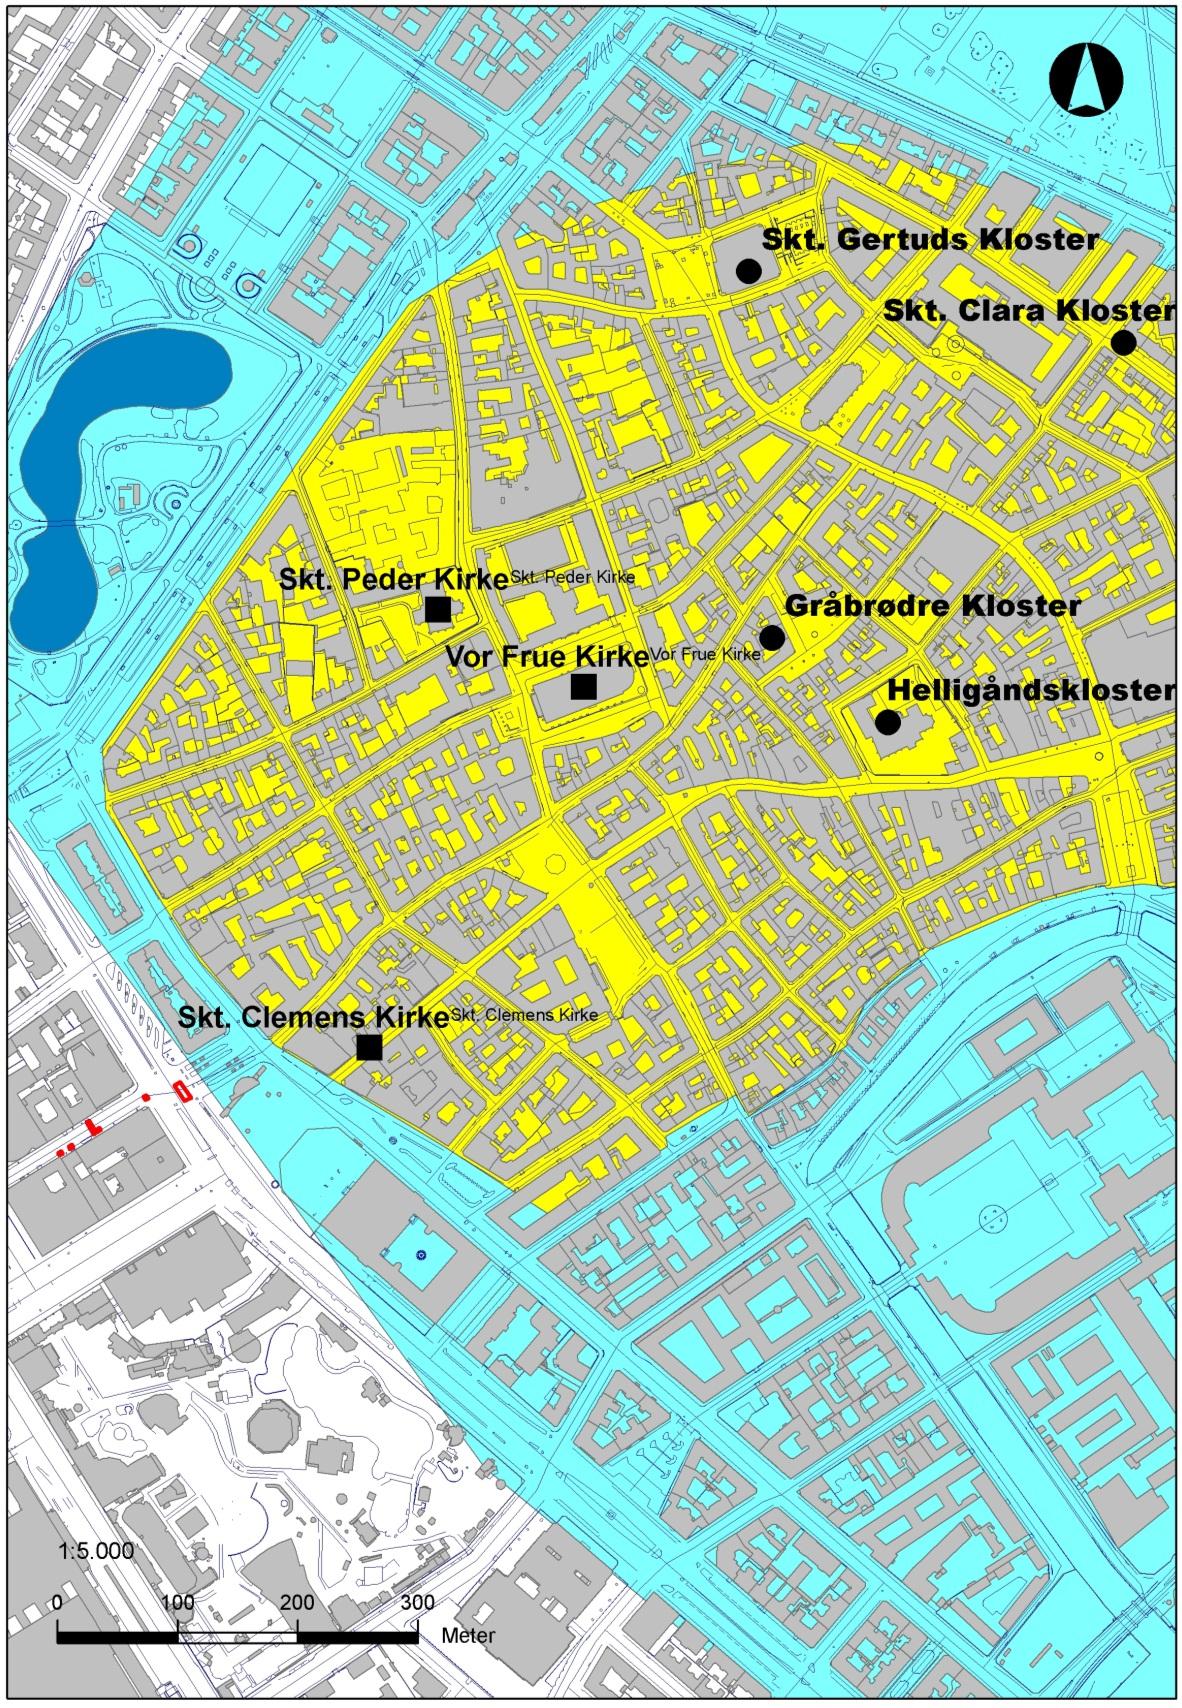 Figur 1 Oversigtskort over området. Den gule farve markerer middelalderbyen, som tidligere undersøgelser har defineret den.